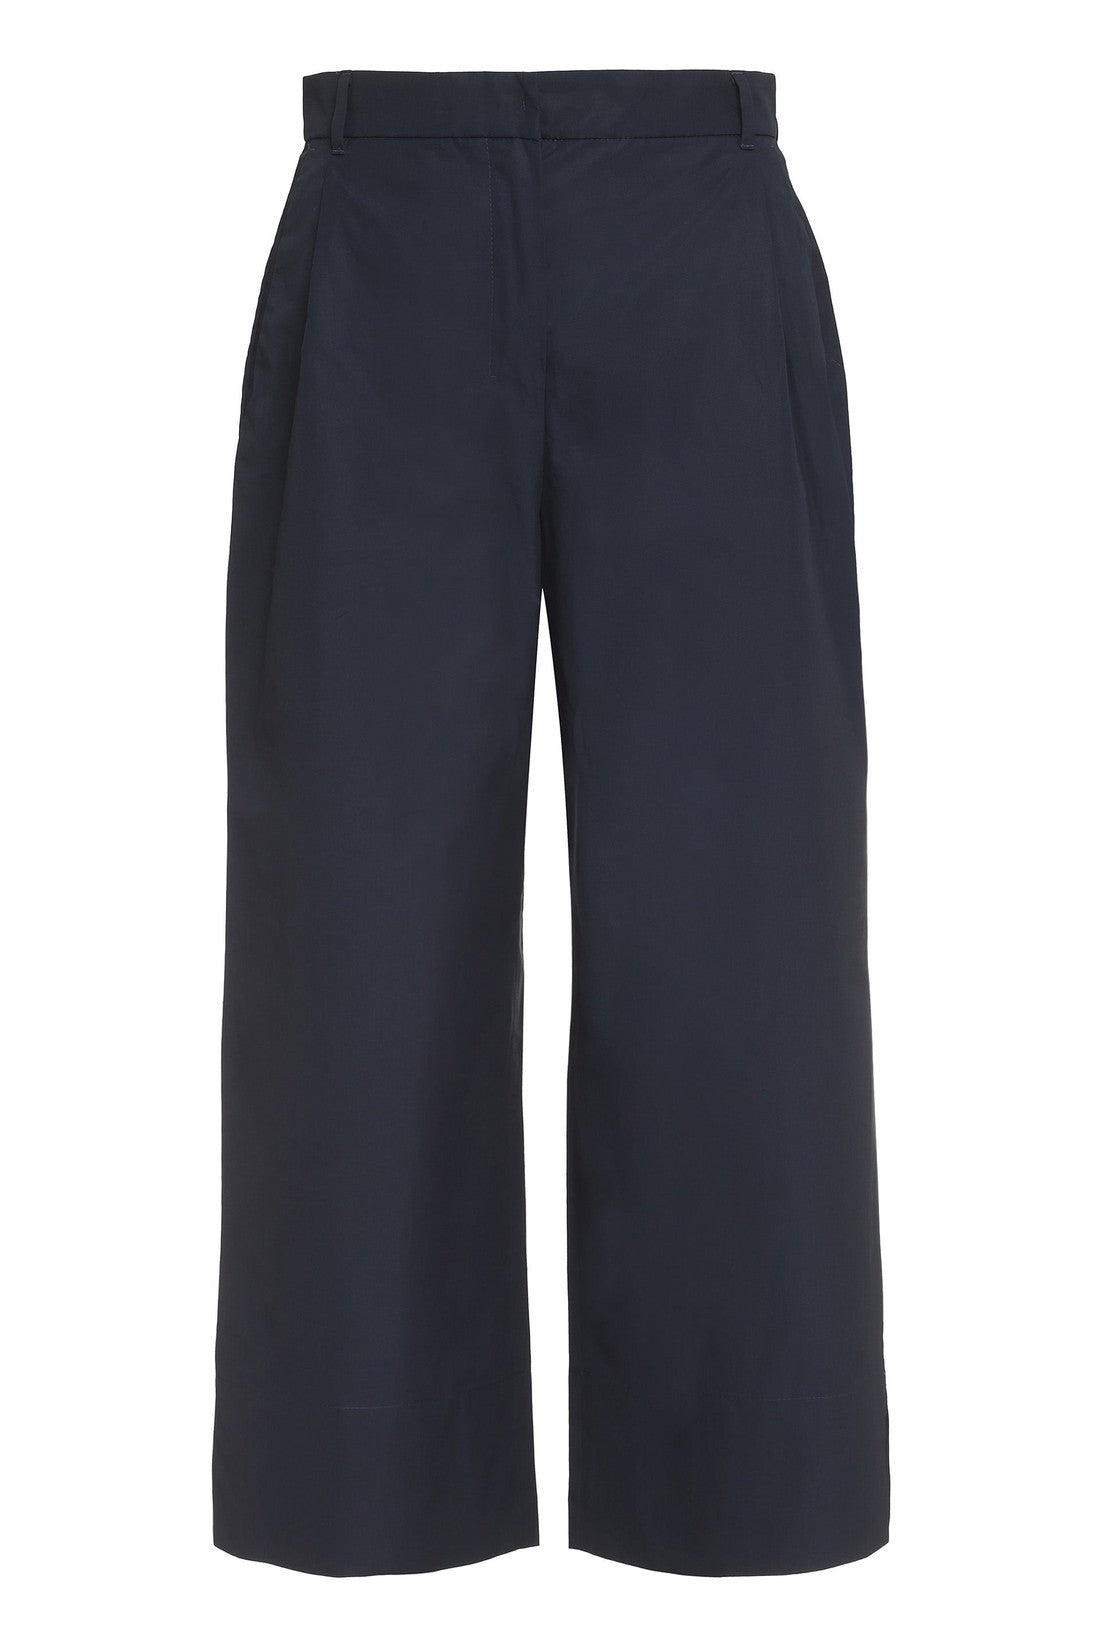 S MAX MARA-OUTLET-SALE-Poplin cotton trousers-ARCHIVIST